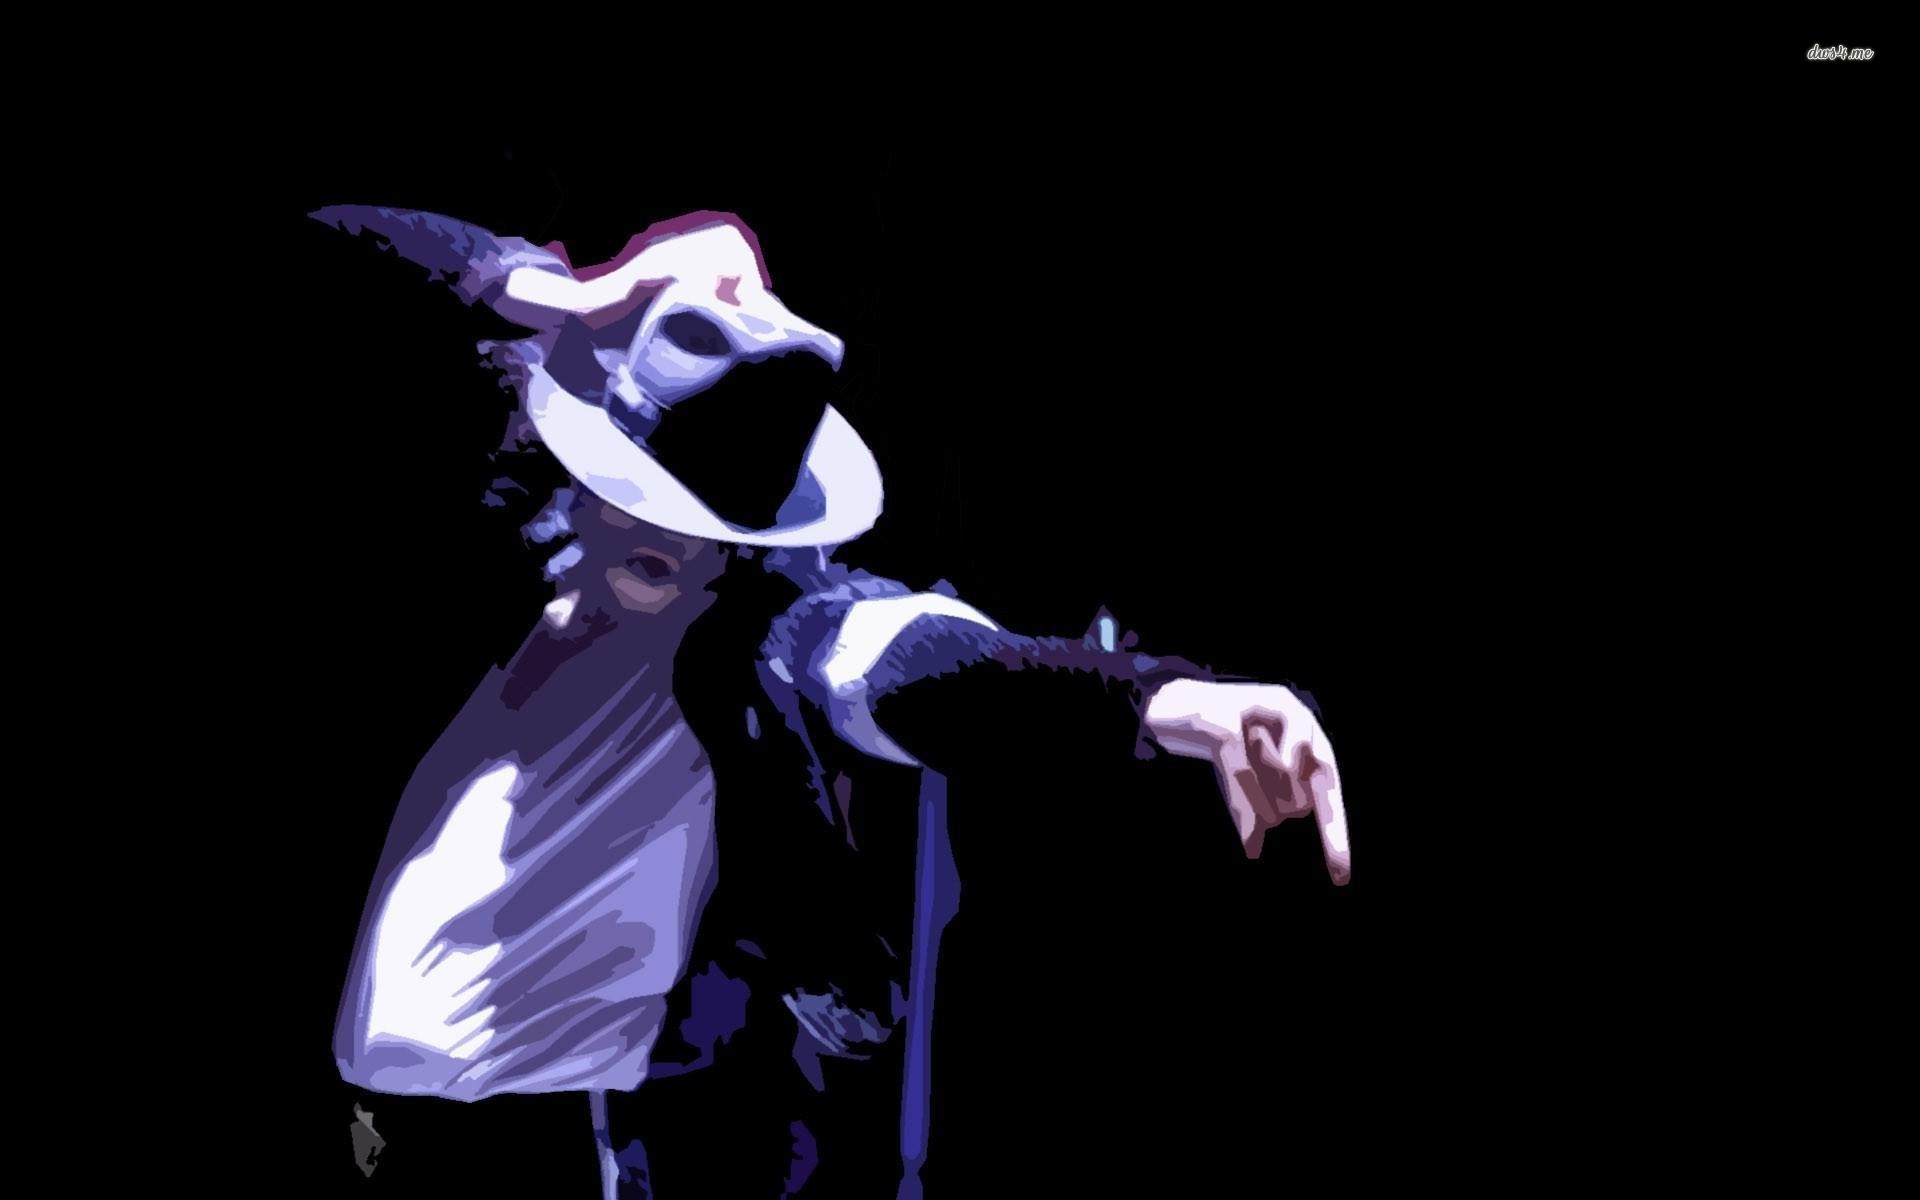 Michael Jackson Wallpaper HD